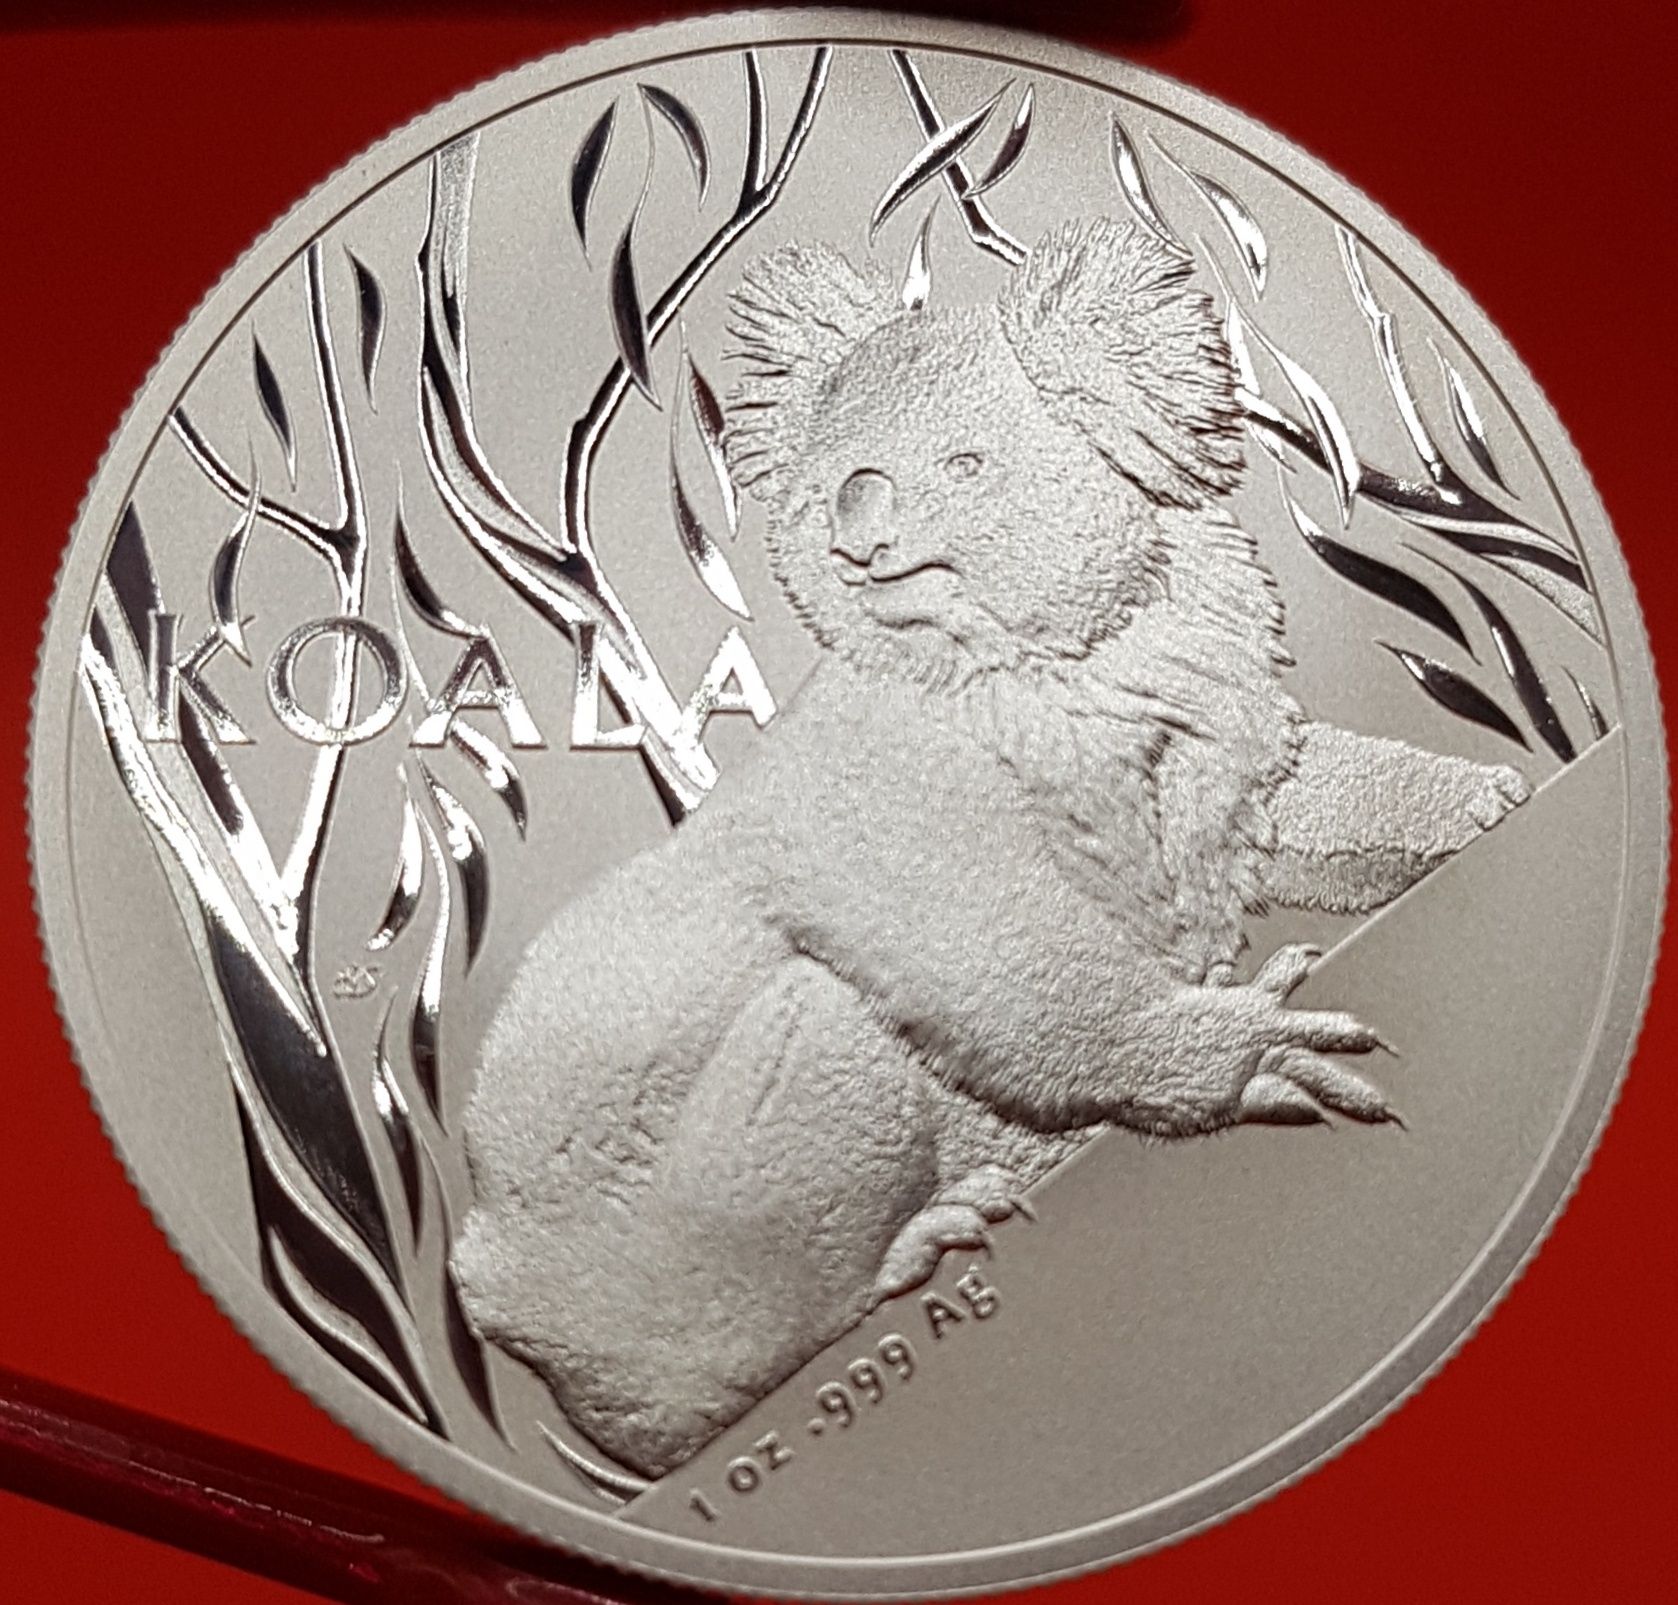 Australia Royal Mint RAM monede lingou argint 999 pur